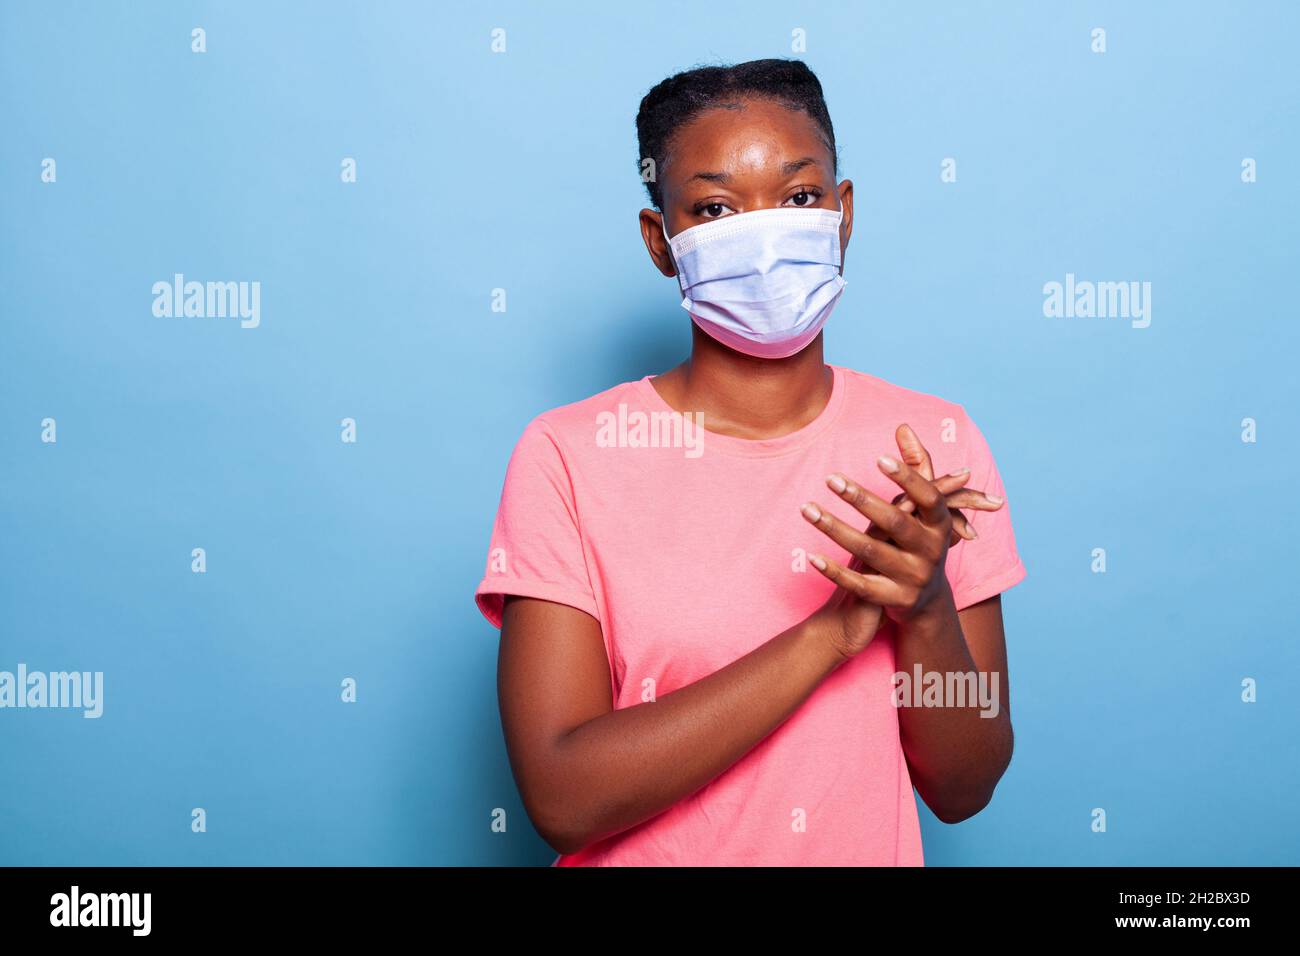 Ritratto africano americano studente con protezione maschera medica viso per prevenire l'infezione con coronavirus clapping e applauding felice e gioioso in studio con sfondo blu. Concetto di vittoria Foto Stock